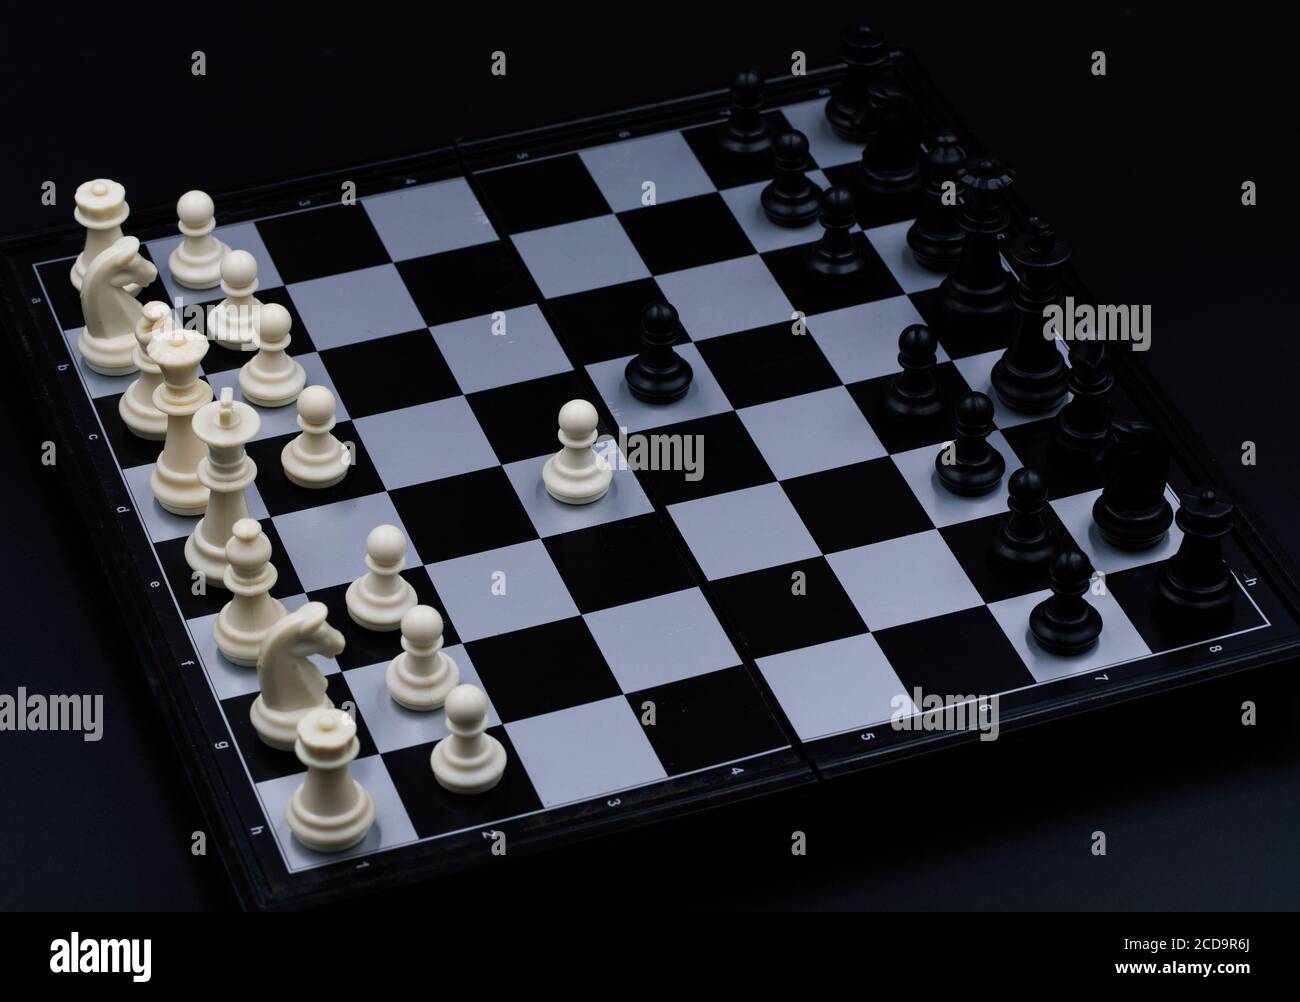 Schachspiel Eröffnung auf Schachbrett. Kariertes Brett mit Figur auf  schwarzem Hintergrund. Schachfigur Ordnung. Checkmate Spiel Banner Vorlage.  Intellektueller sp Stockfotografie - Alamy